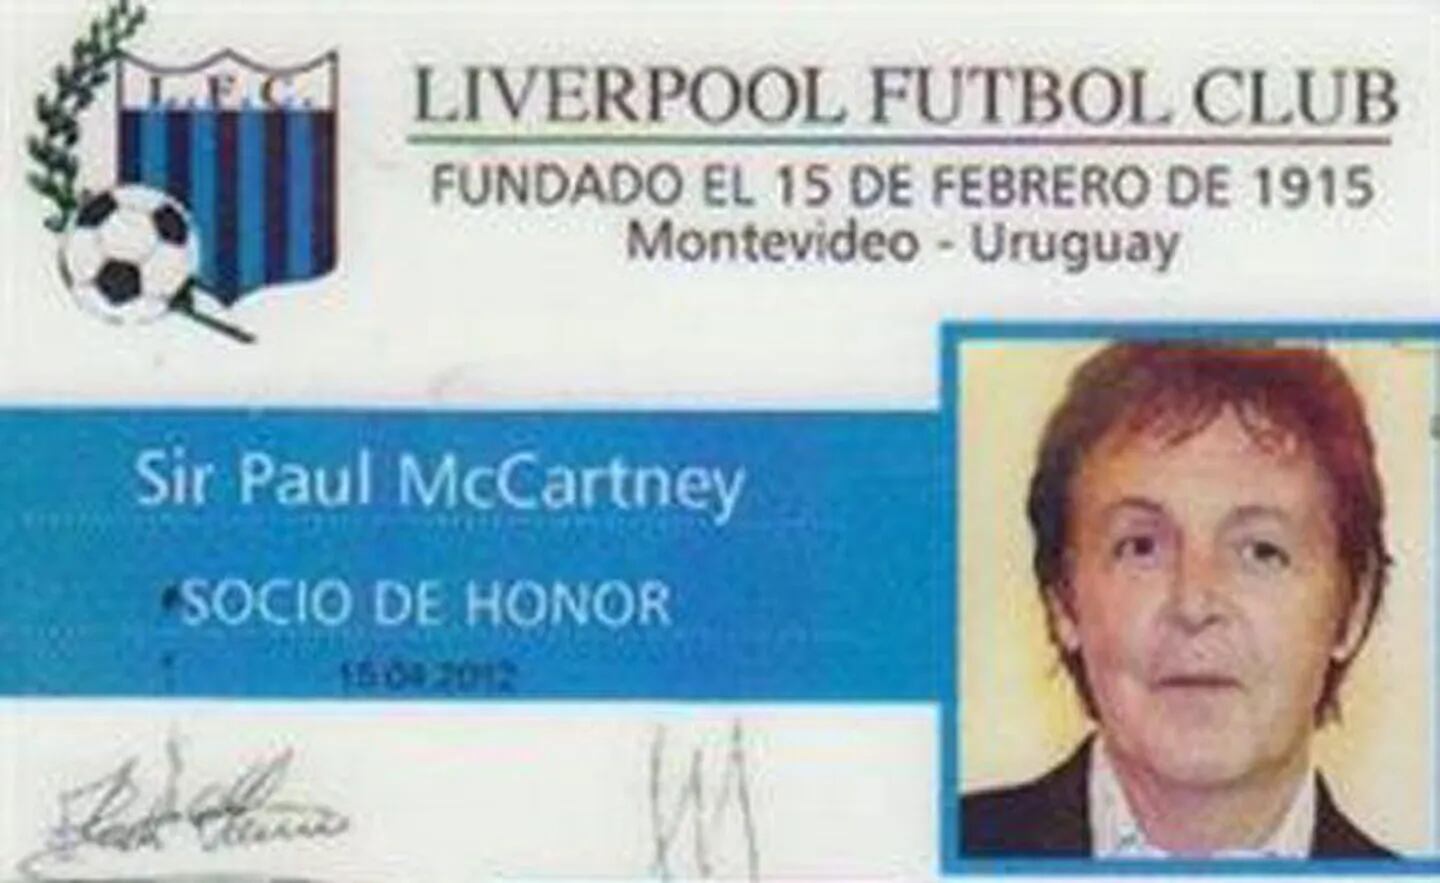 Paul McCartney ahora es socio de honor del Liverpool... de Uruguay. (Foto: liverpoolfc.com.uy)